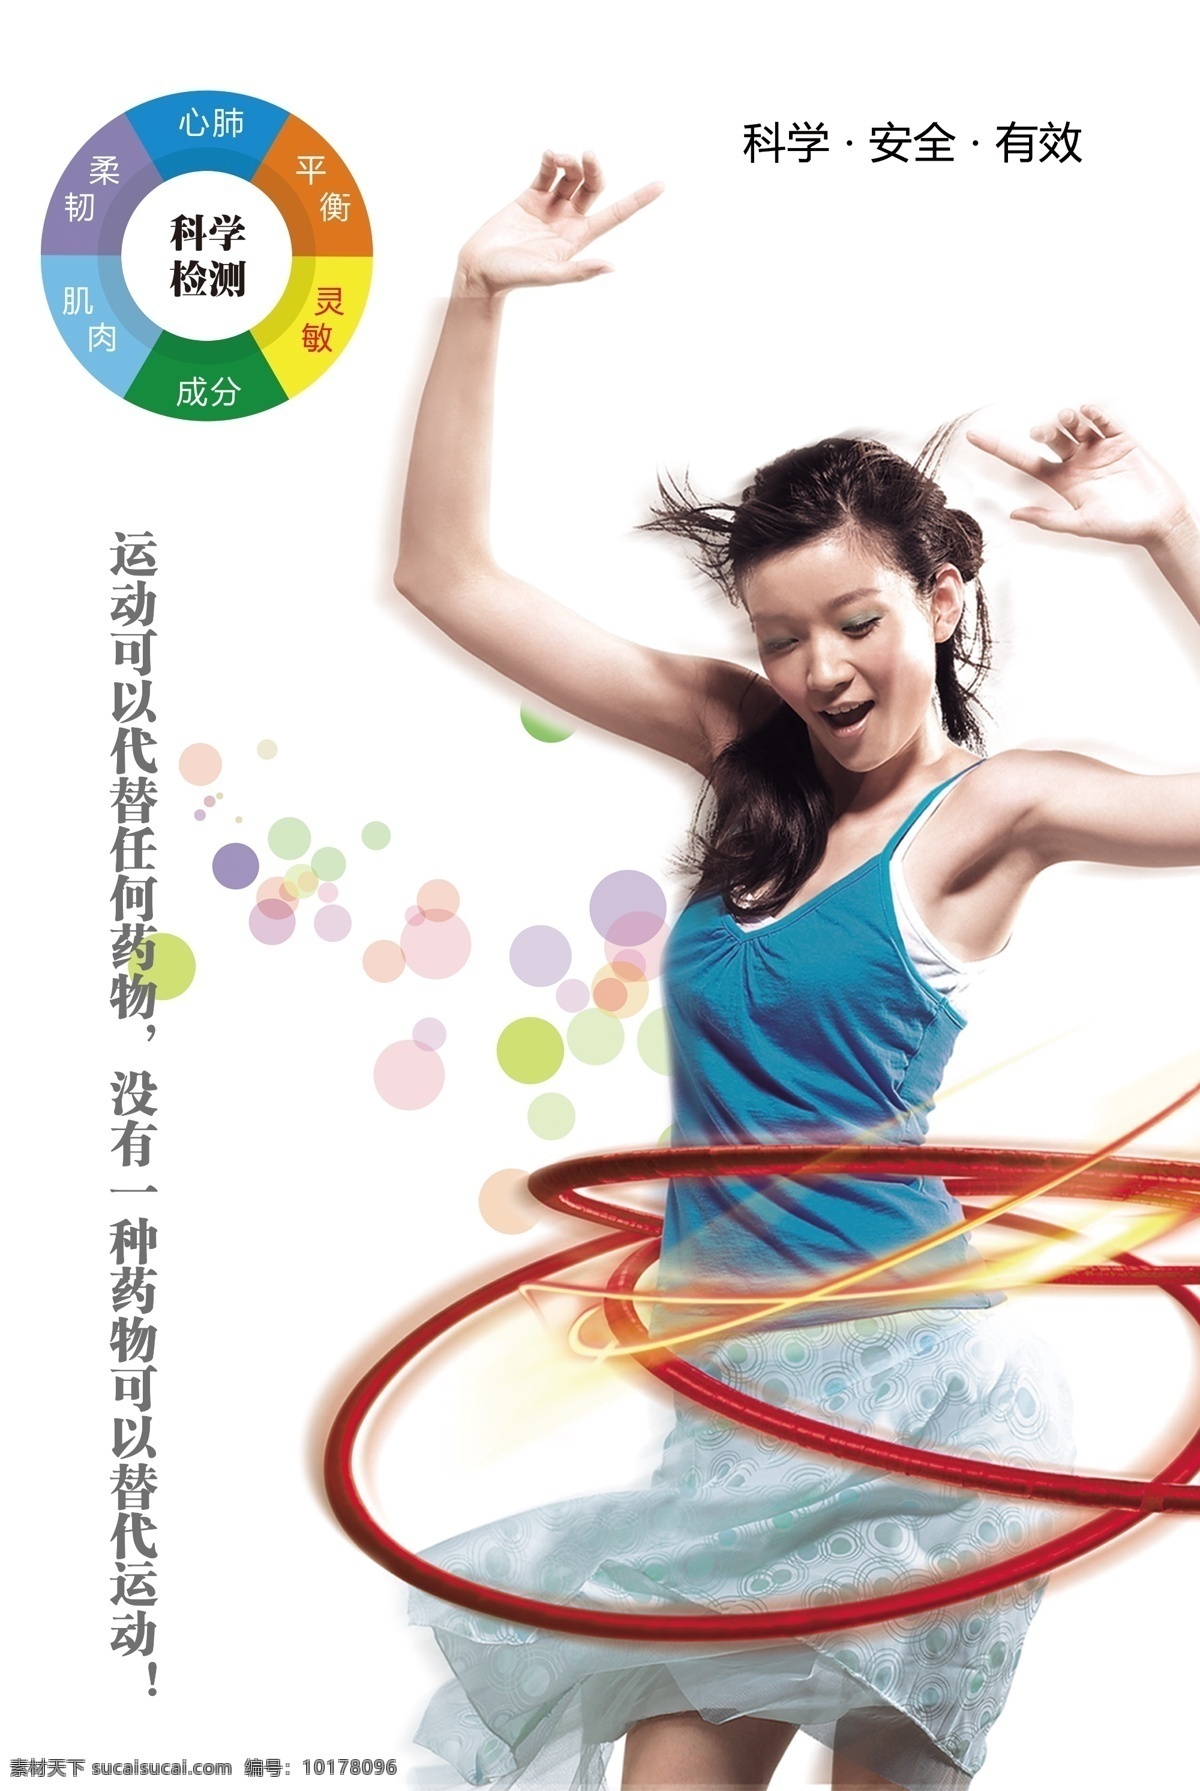 运动 呼啦圈 美女 科学 健康 检测 平衡 柔韧 肌肉 灵敏 锻炼 海报